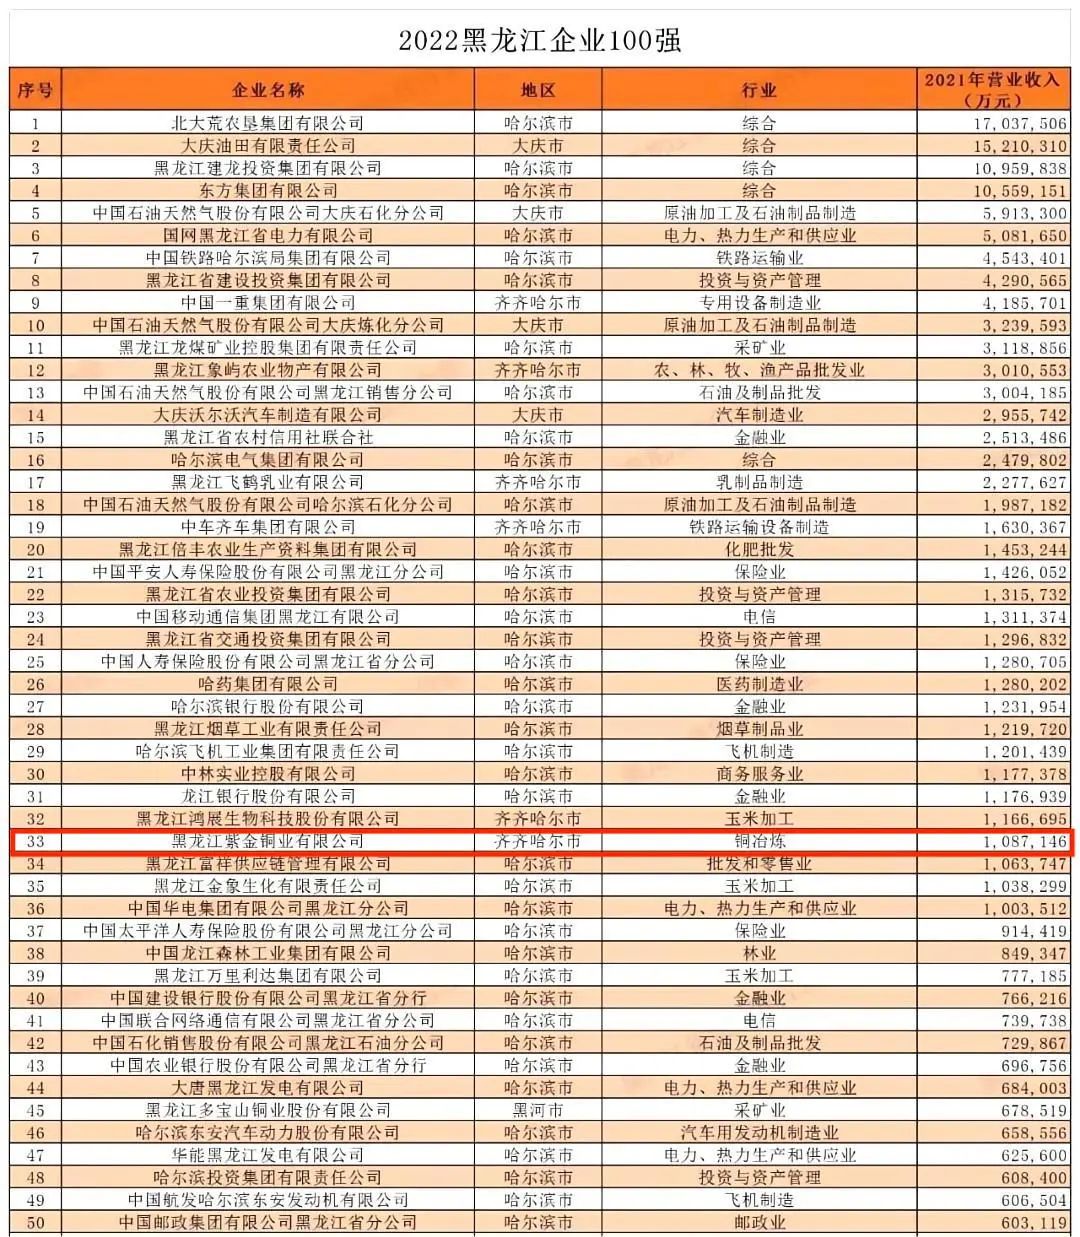 黑龍江紫金銅業位列2022黑龍江企業100強33位與黑龍江制造業企業100強16位